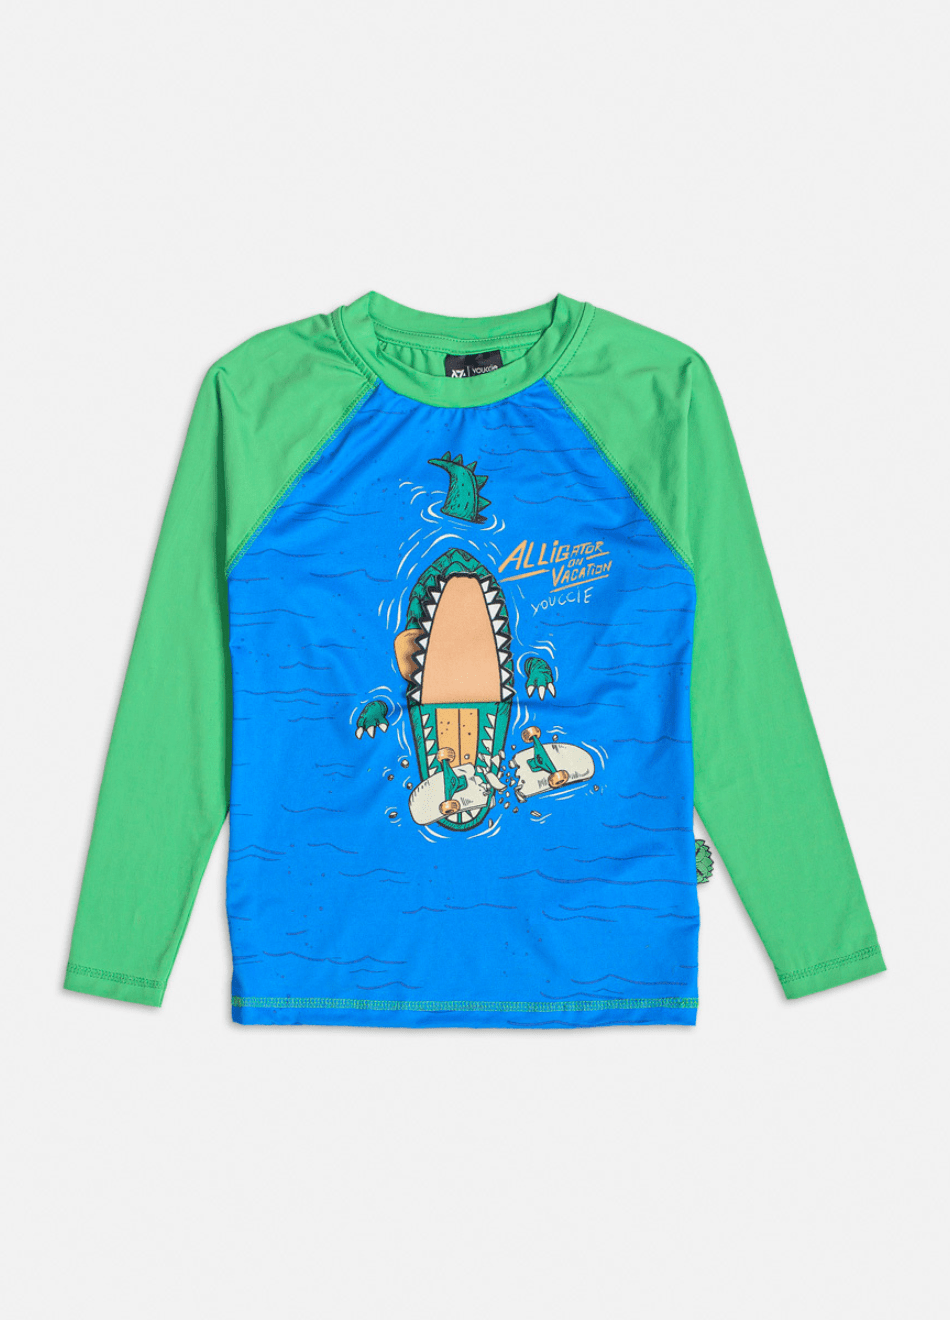 Camiseta Youccie Infantil Manga Longa SunProtect 50+ Alligator